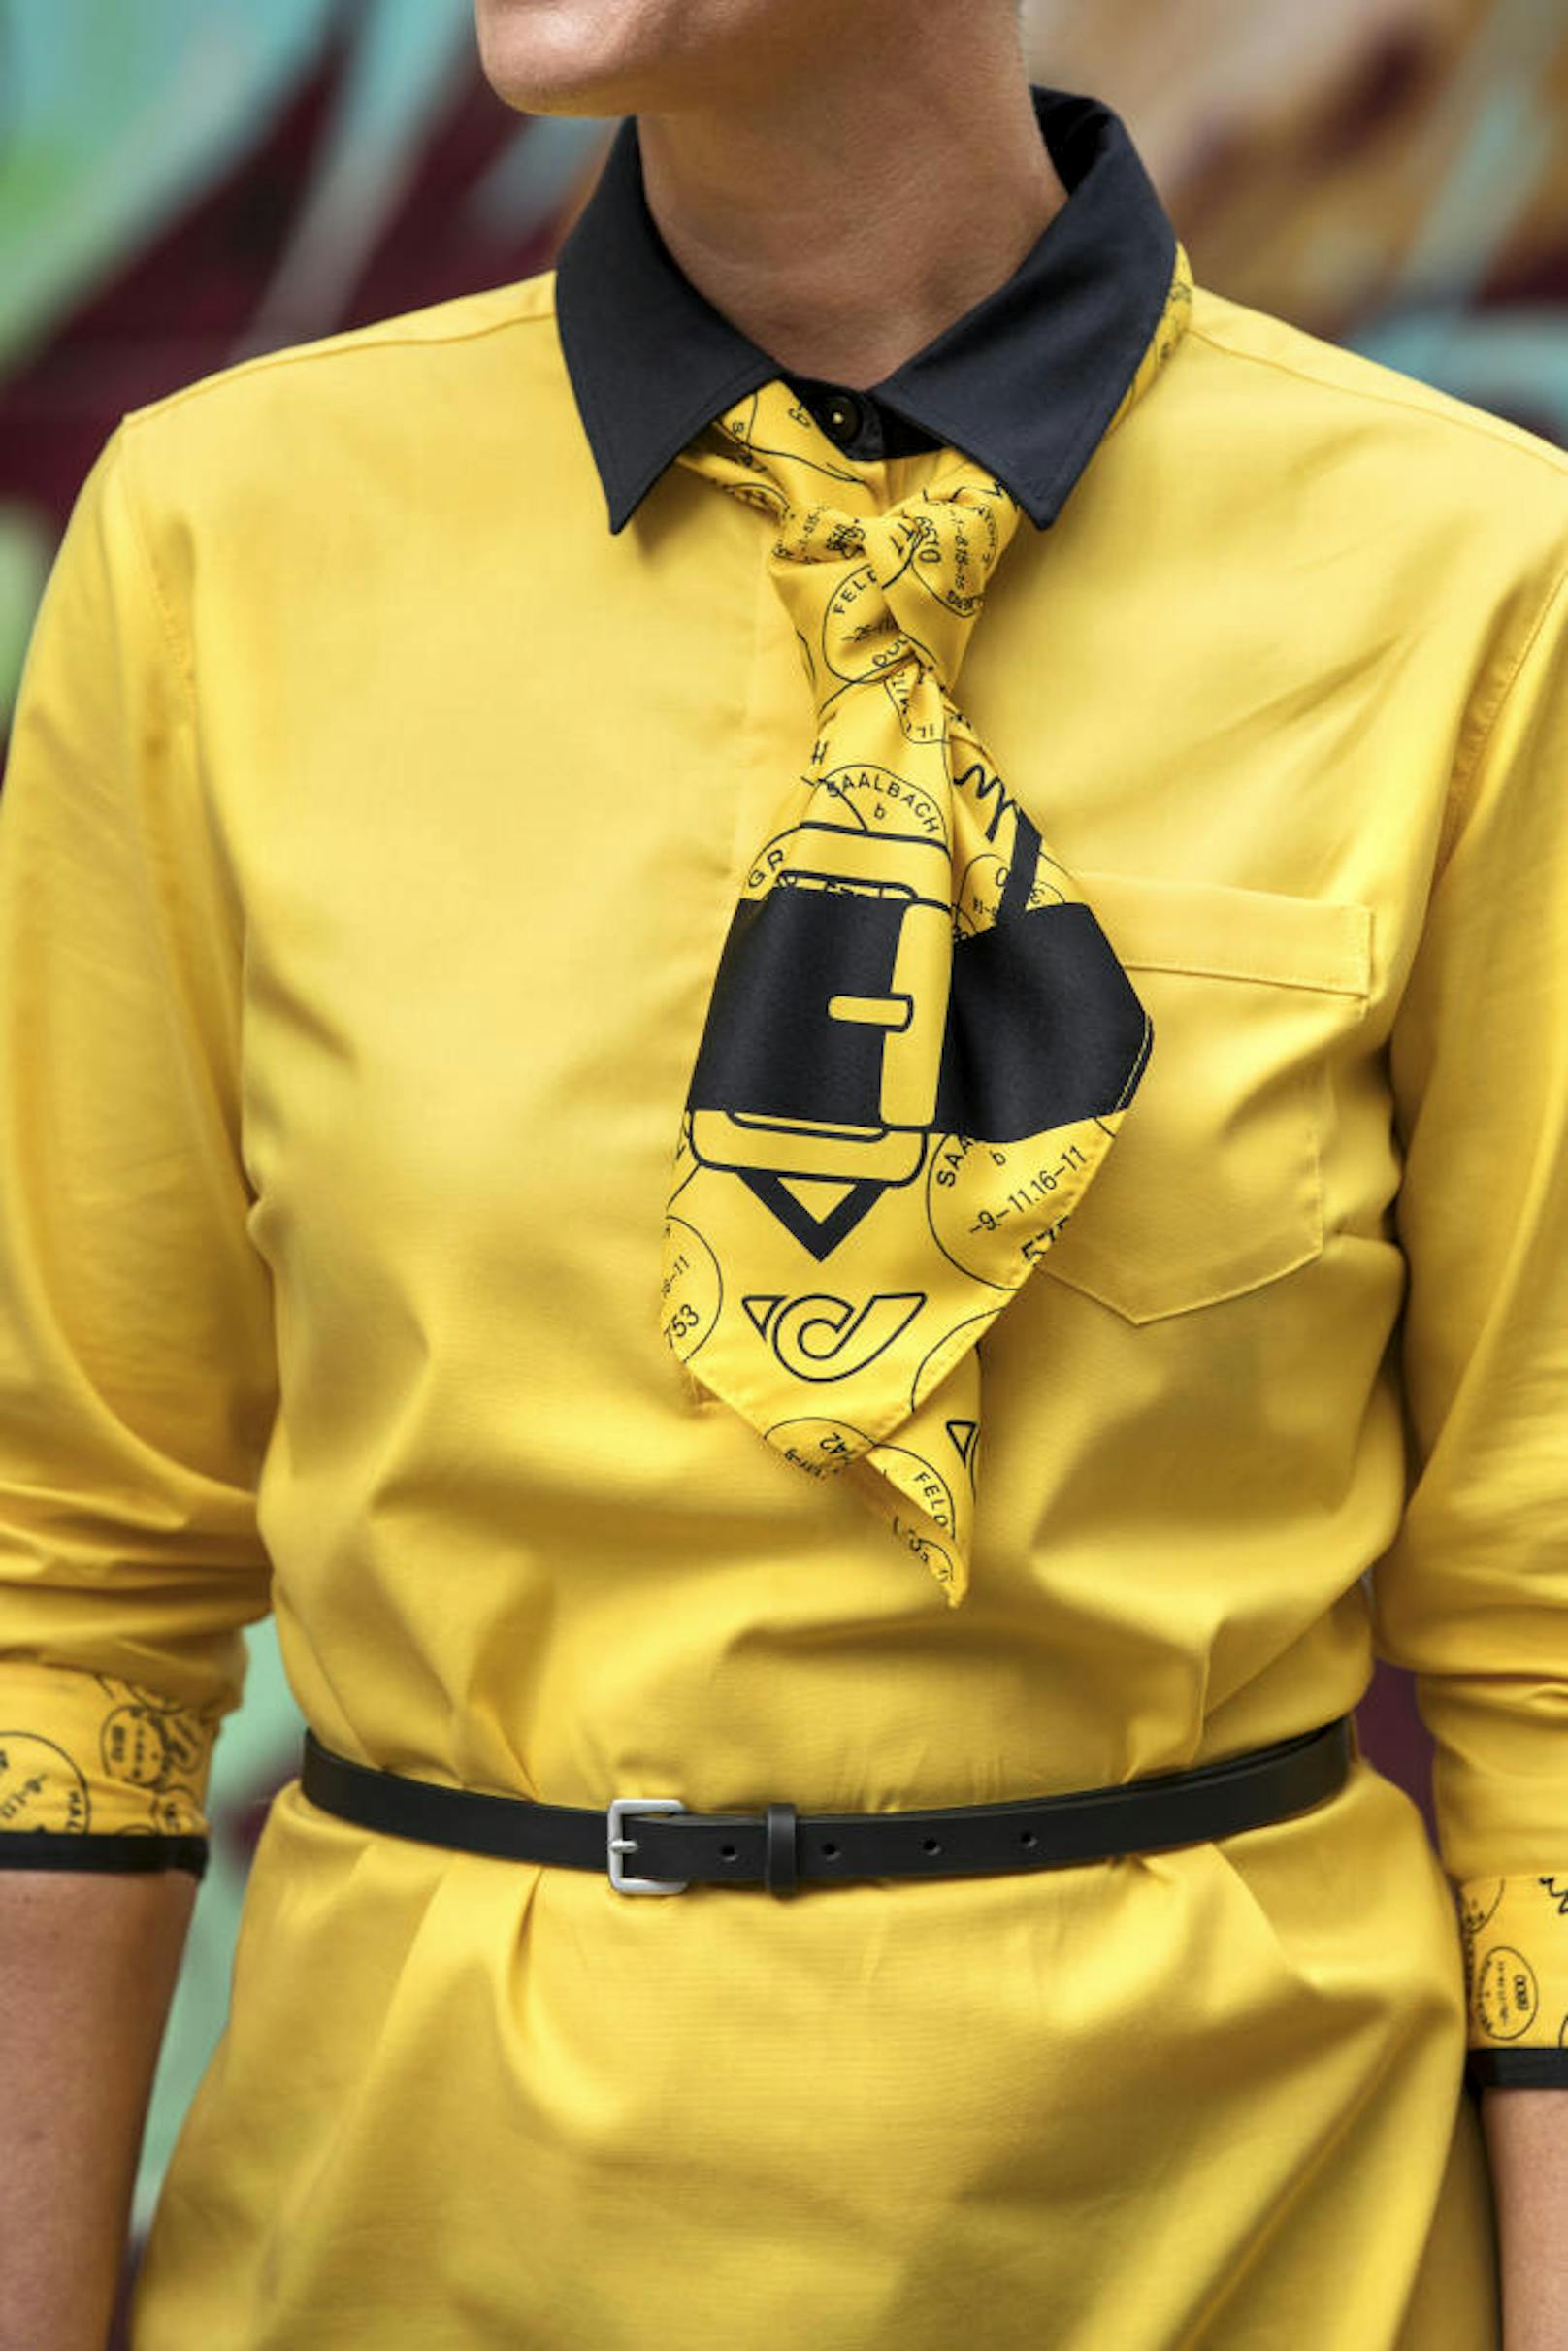 Das gelbe Tuch kann als Krawatte oder auch als Kopftuch getragen werden.